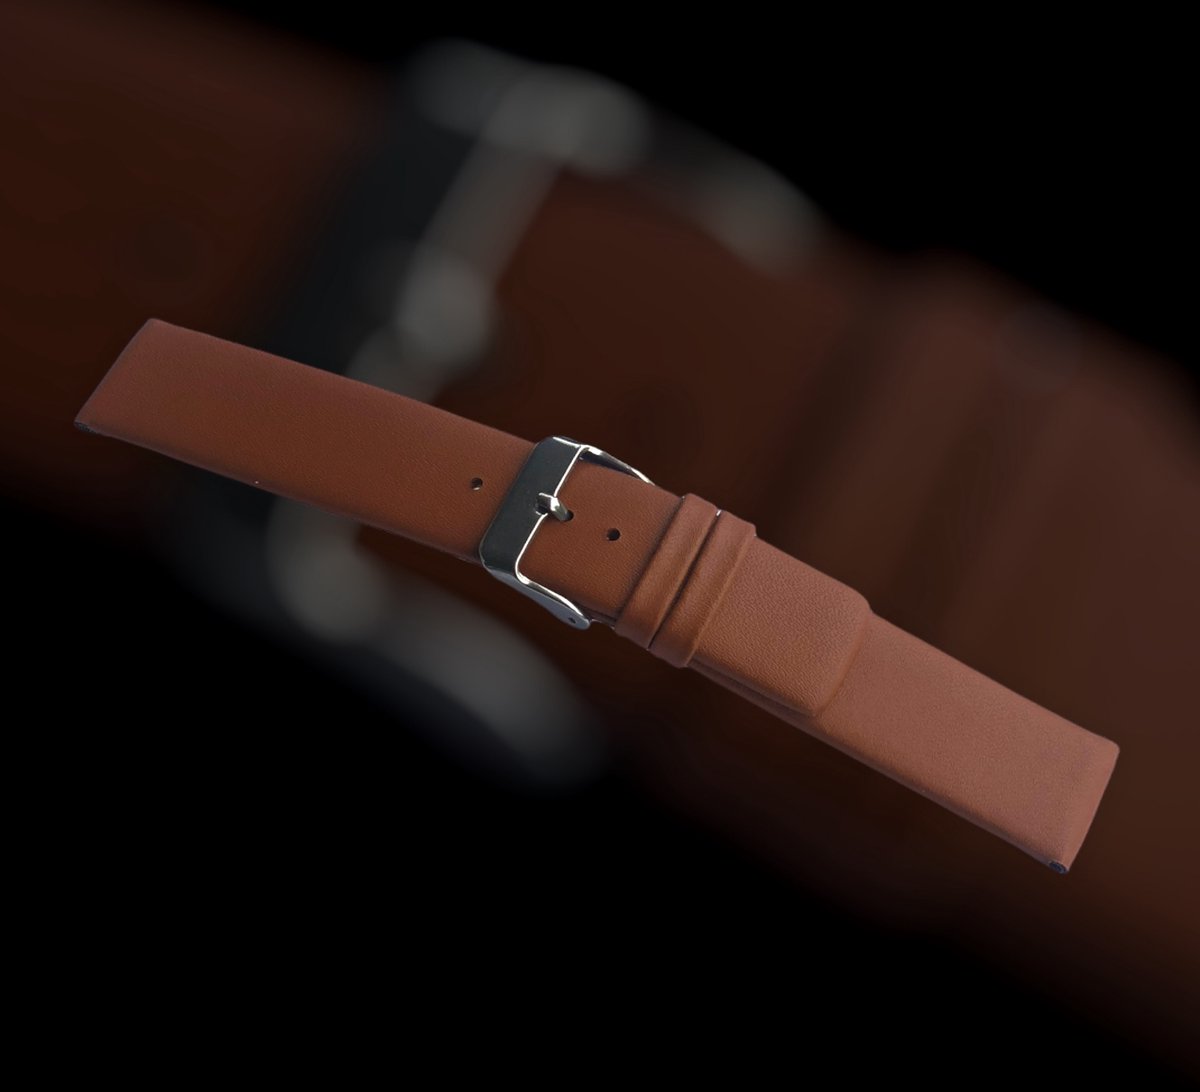 horlogeband-horlogebandje-14mm-echt leer-bruin-recht-zacht-plat-leer-14 mm